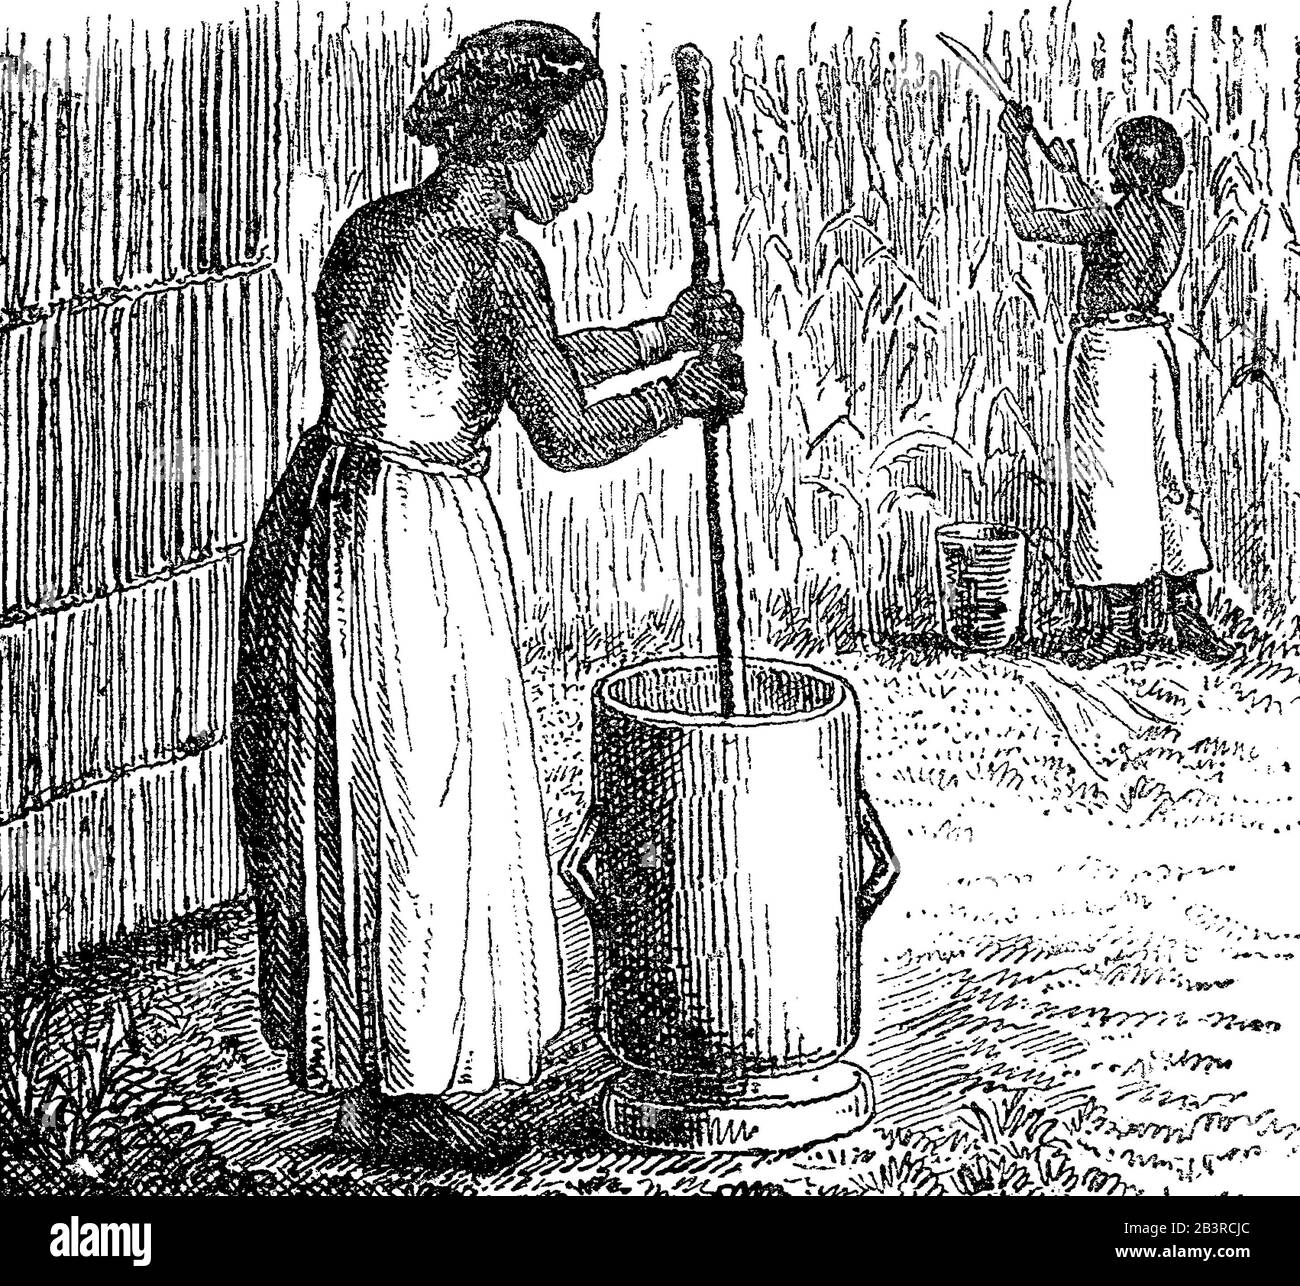 Afrika - Frau bereitet gruelle oder andere farinaähnliche Lebensmittel vor und rührt bis zu einer ziemlich glatten Vintage-Gravur Stockfoto